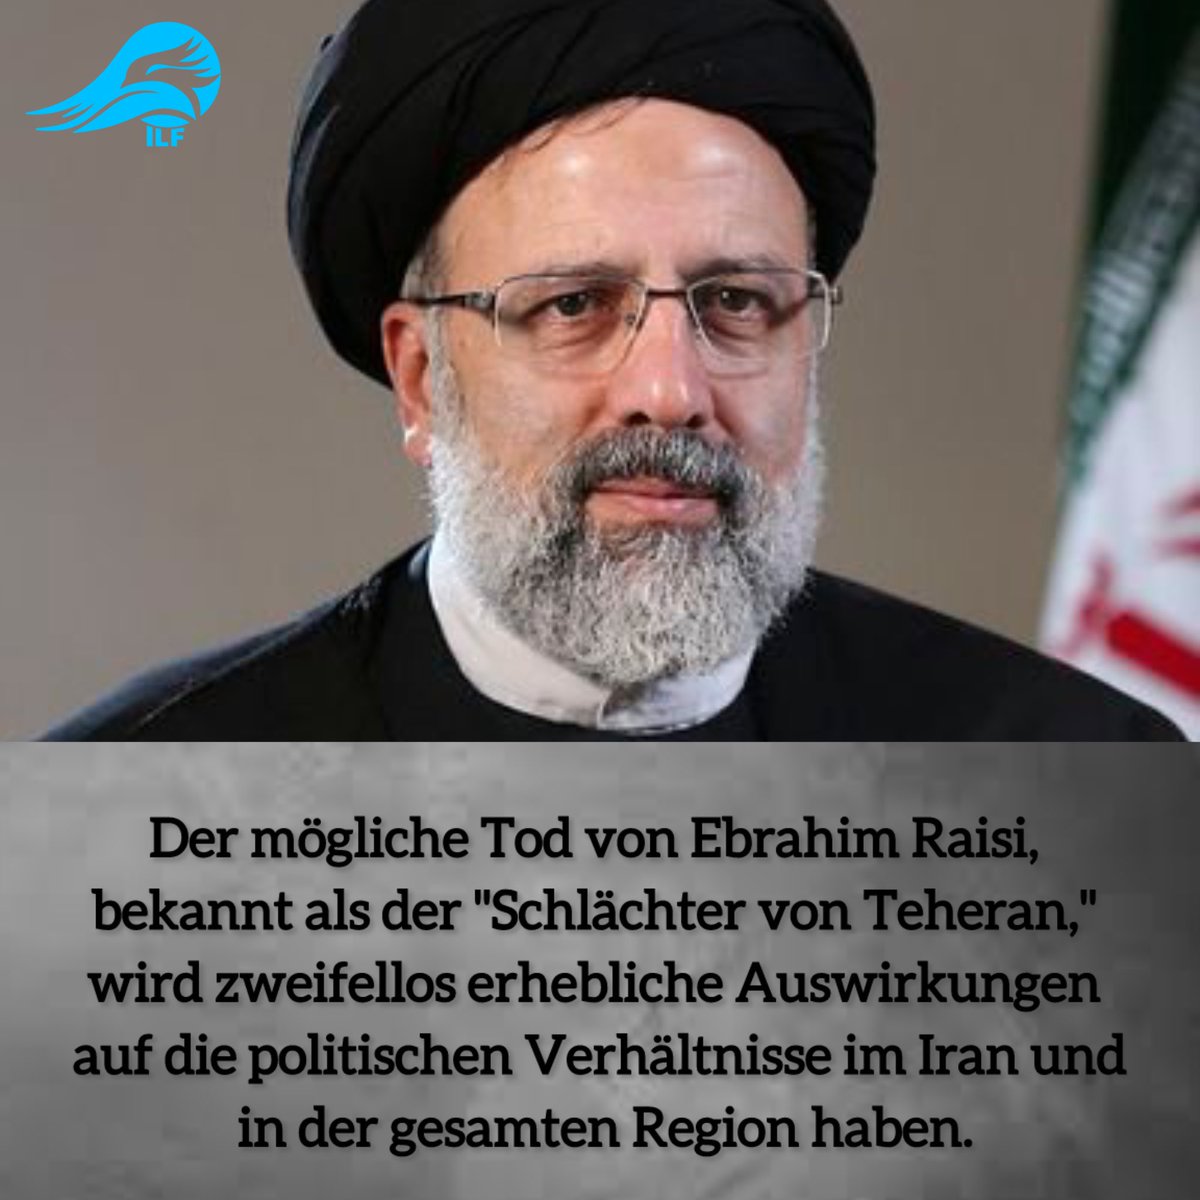 Der mögliche Tod von Ebrahim #Raisi, bekannt als der 'Schlächter von Teheran,' wird zweifellos erhebliche Auswirkungen auf die politischen Verhältnisse im #Iran und in der gesamten Region haben.

#IranRevolution 
#Israel